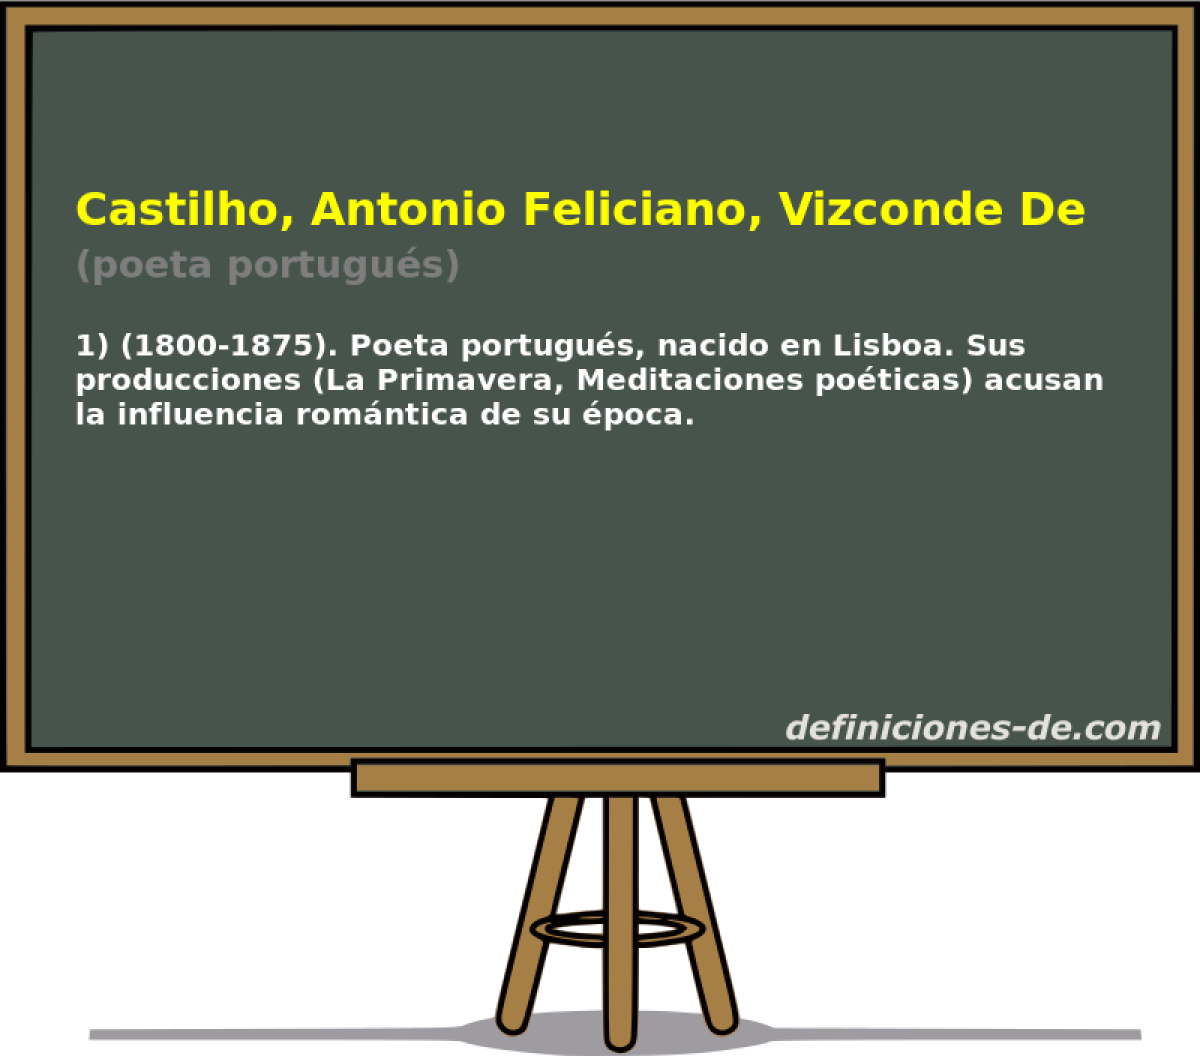 Castilho, Antonio Feliciano, Vizconde De (poeta portugus)